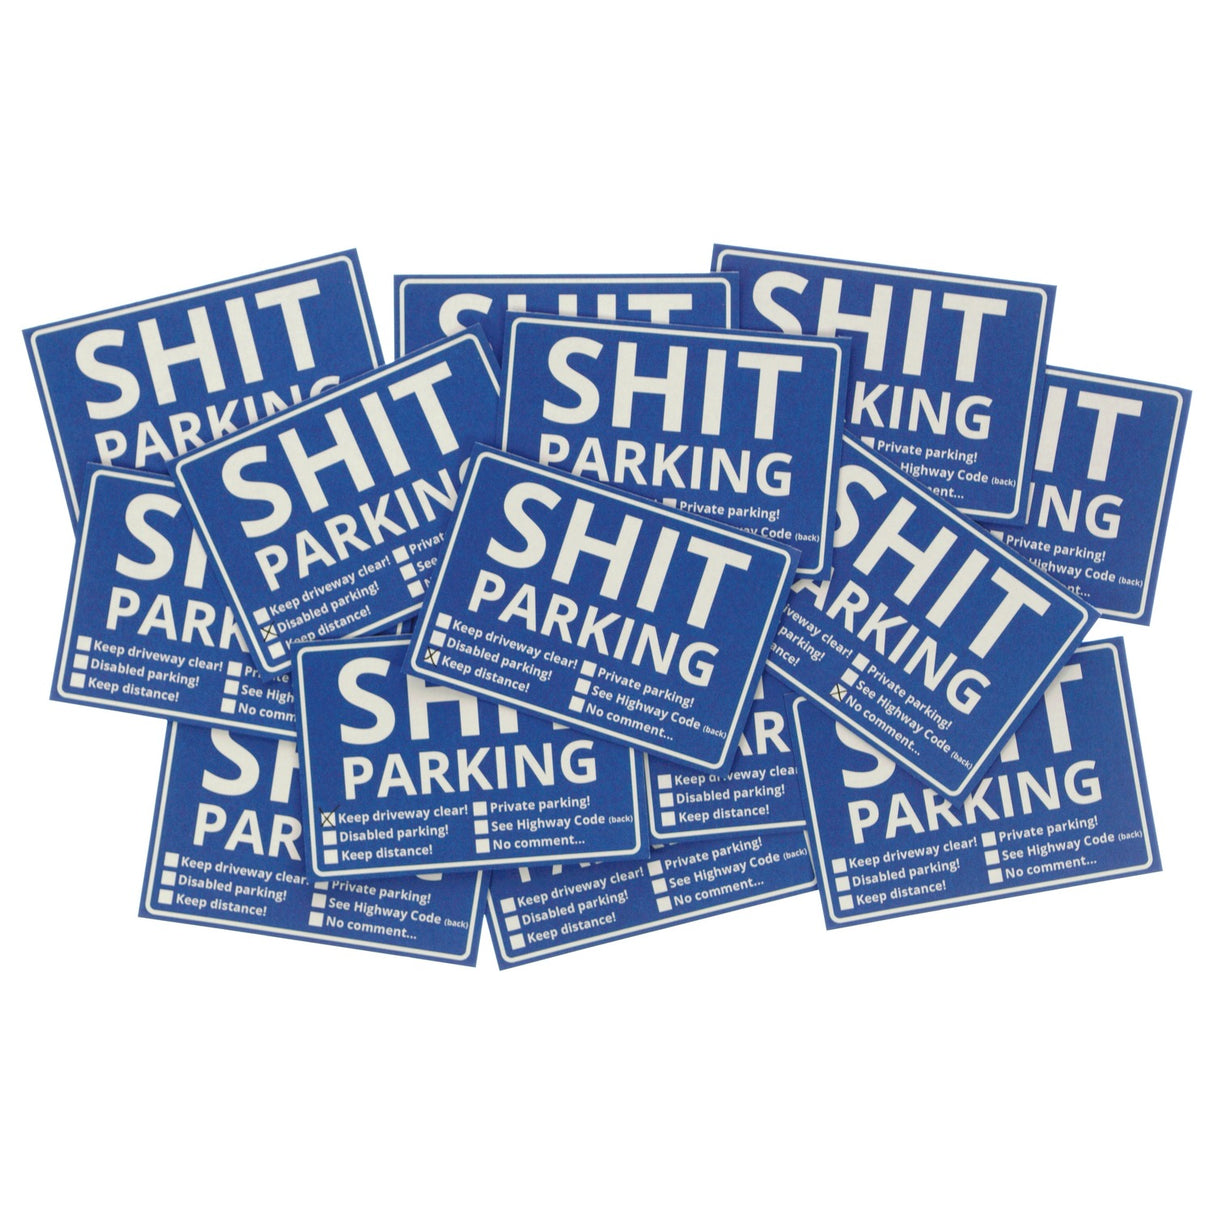 Shit Parking Scheisse Geparkt! Notizblock Englisch: Kaufen und Klicken! -  Notizzettel ausgefallen praktisch Männer Geschenk Poor Bad Habits Car Park  –